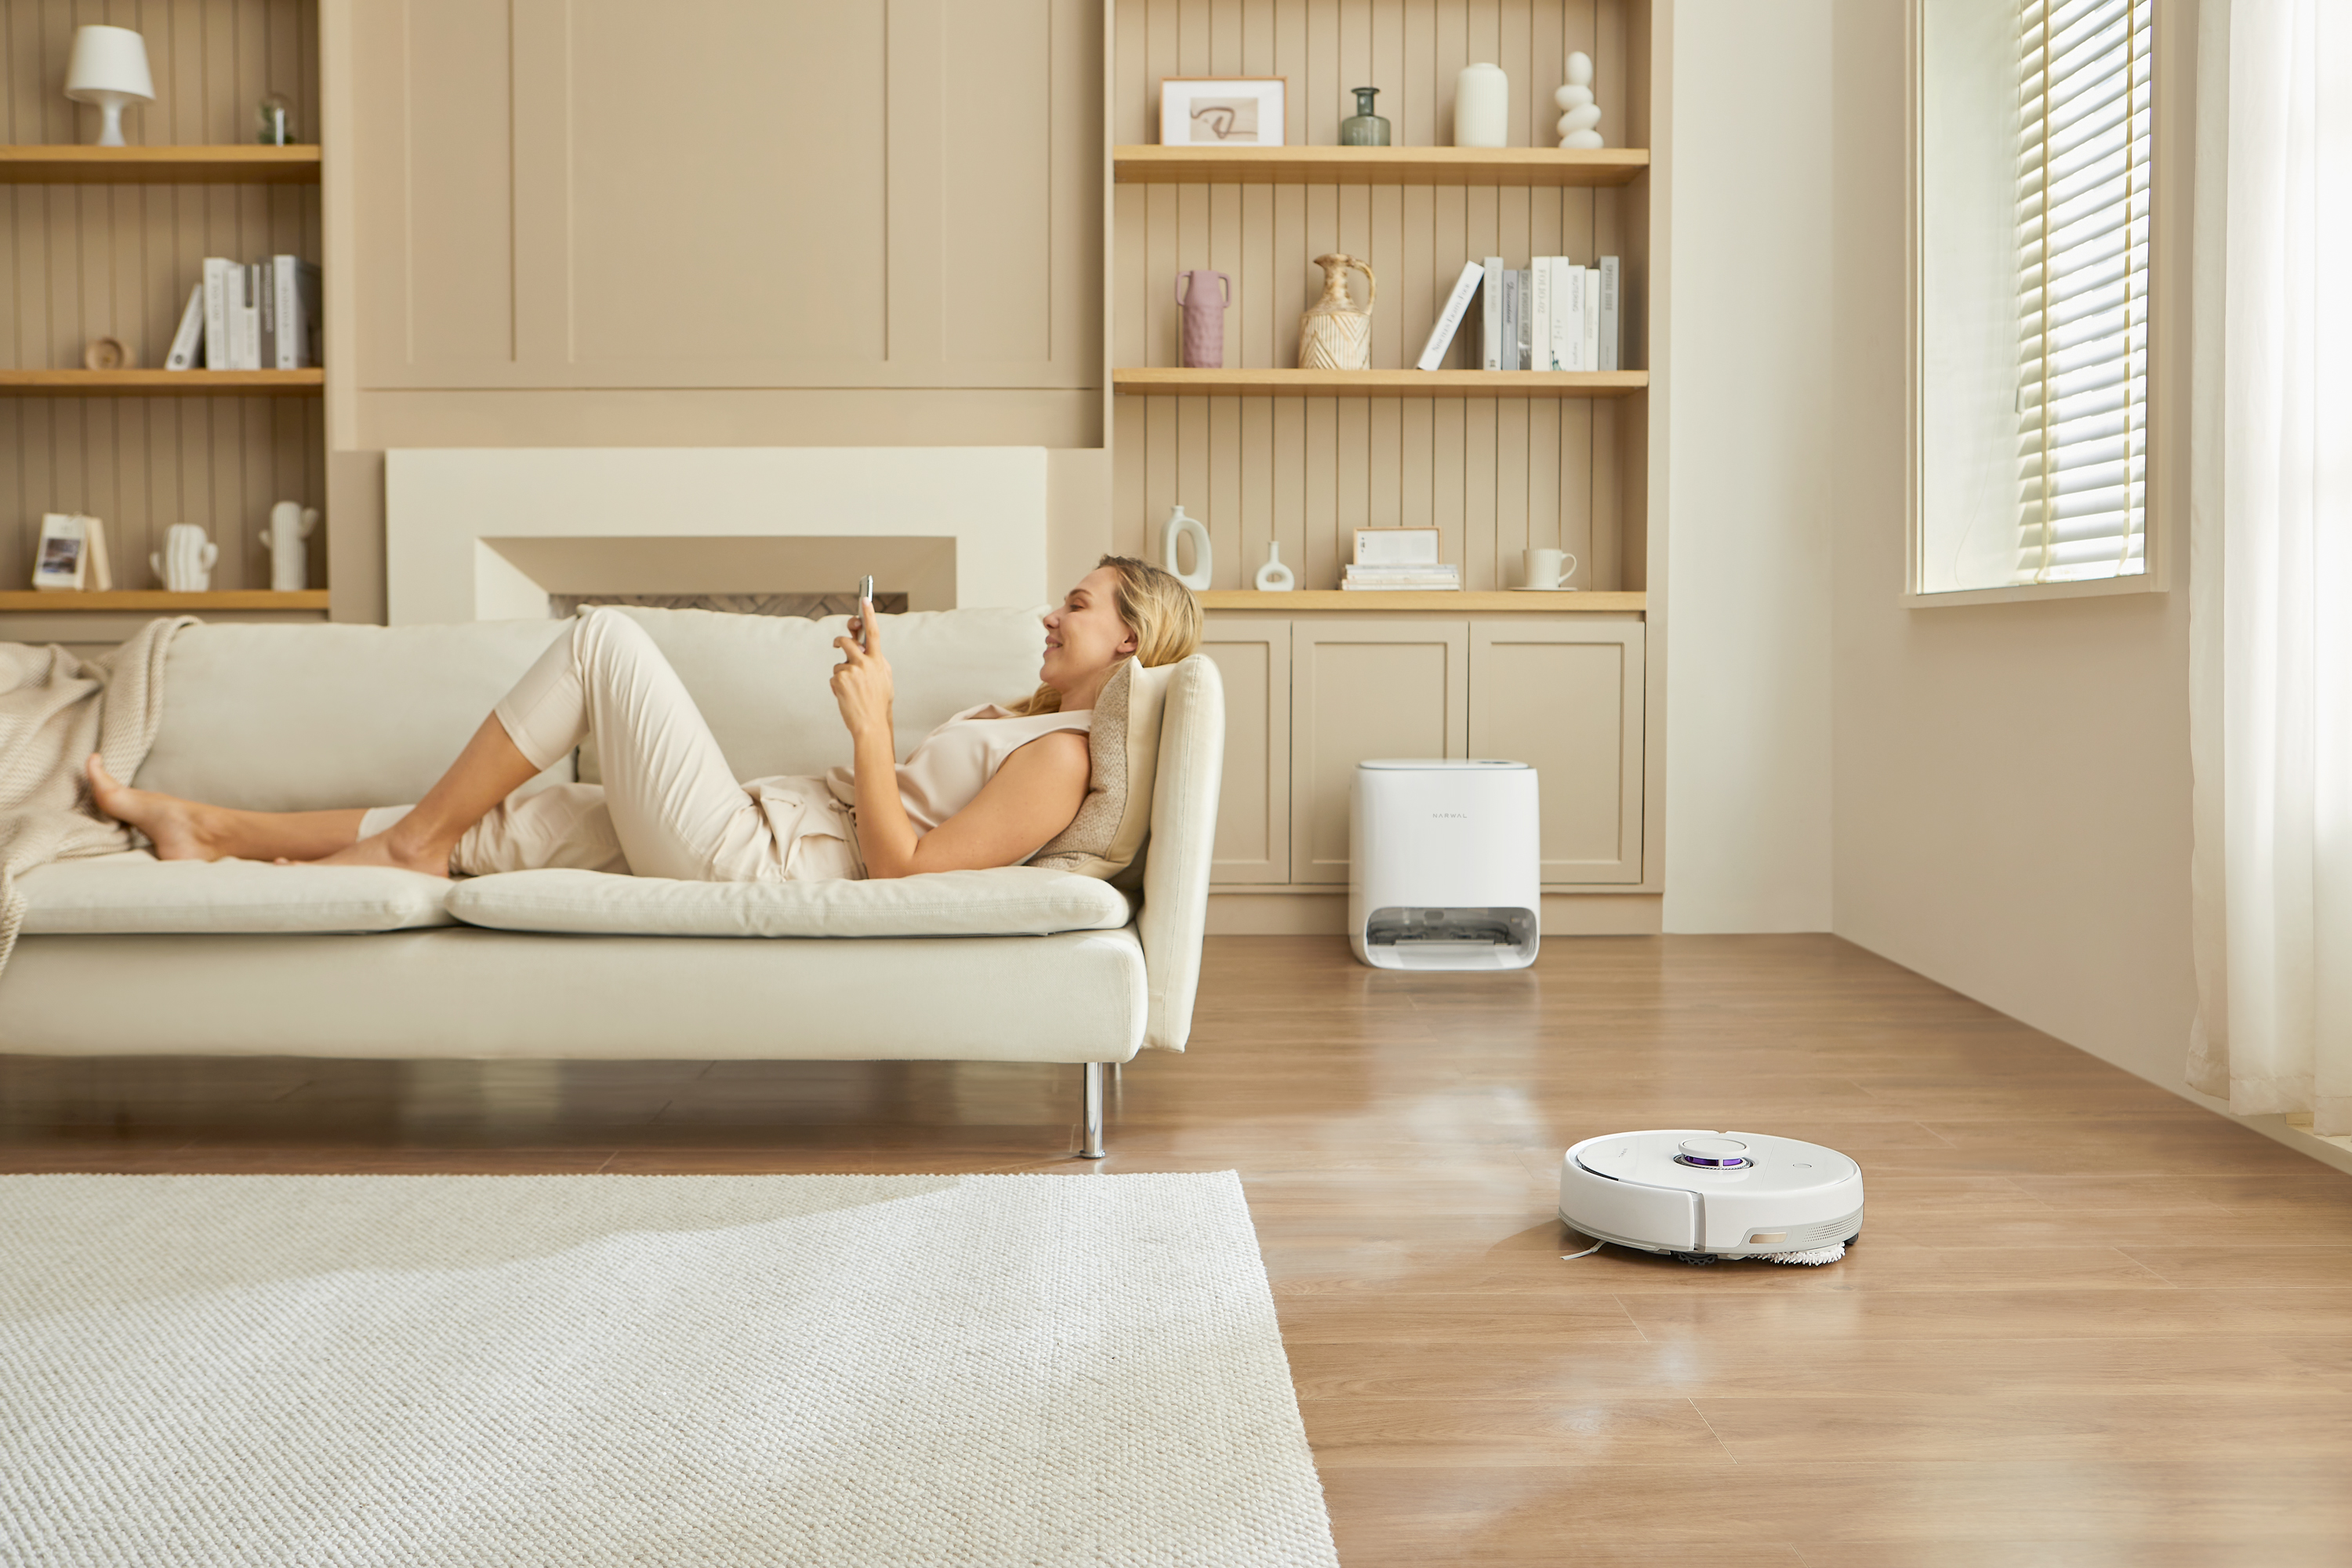 El robot de limpieza inteligente aspira limpia tu habitación